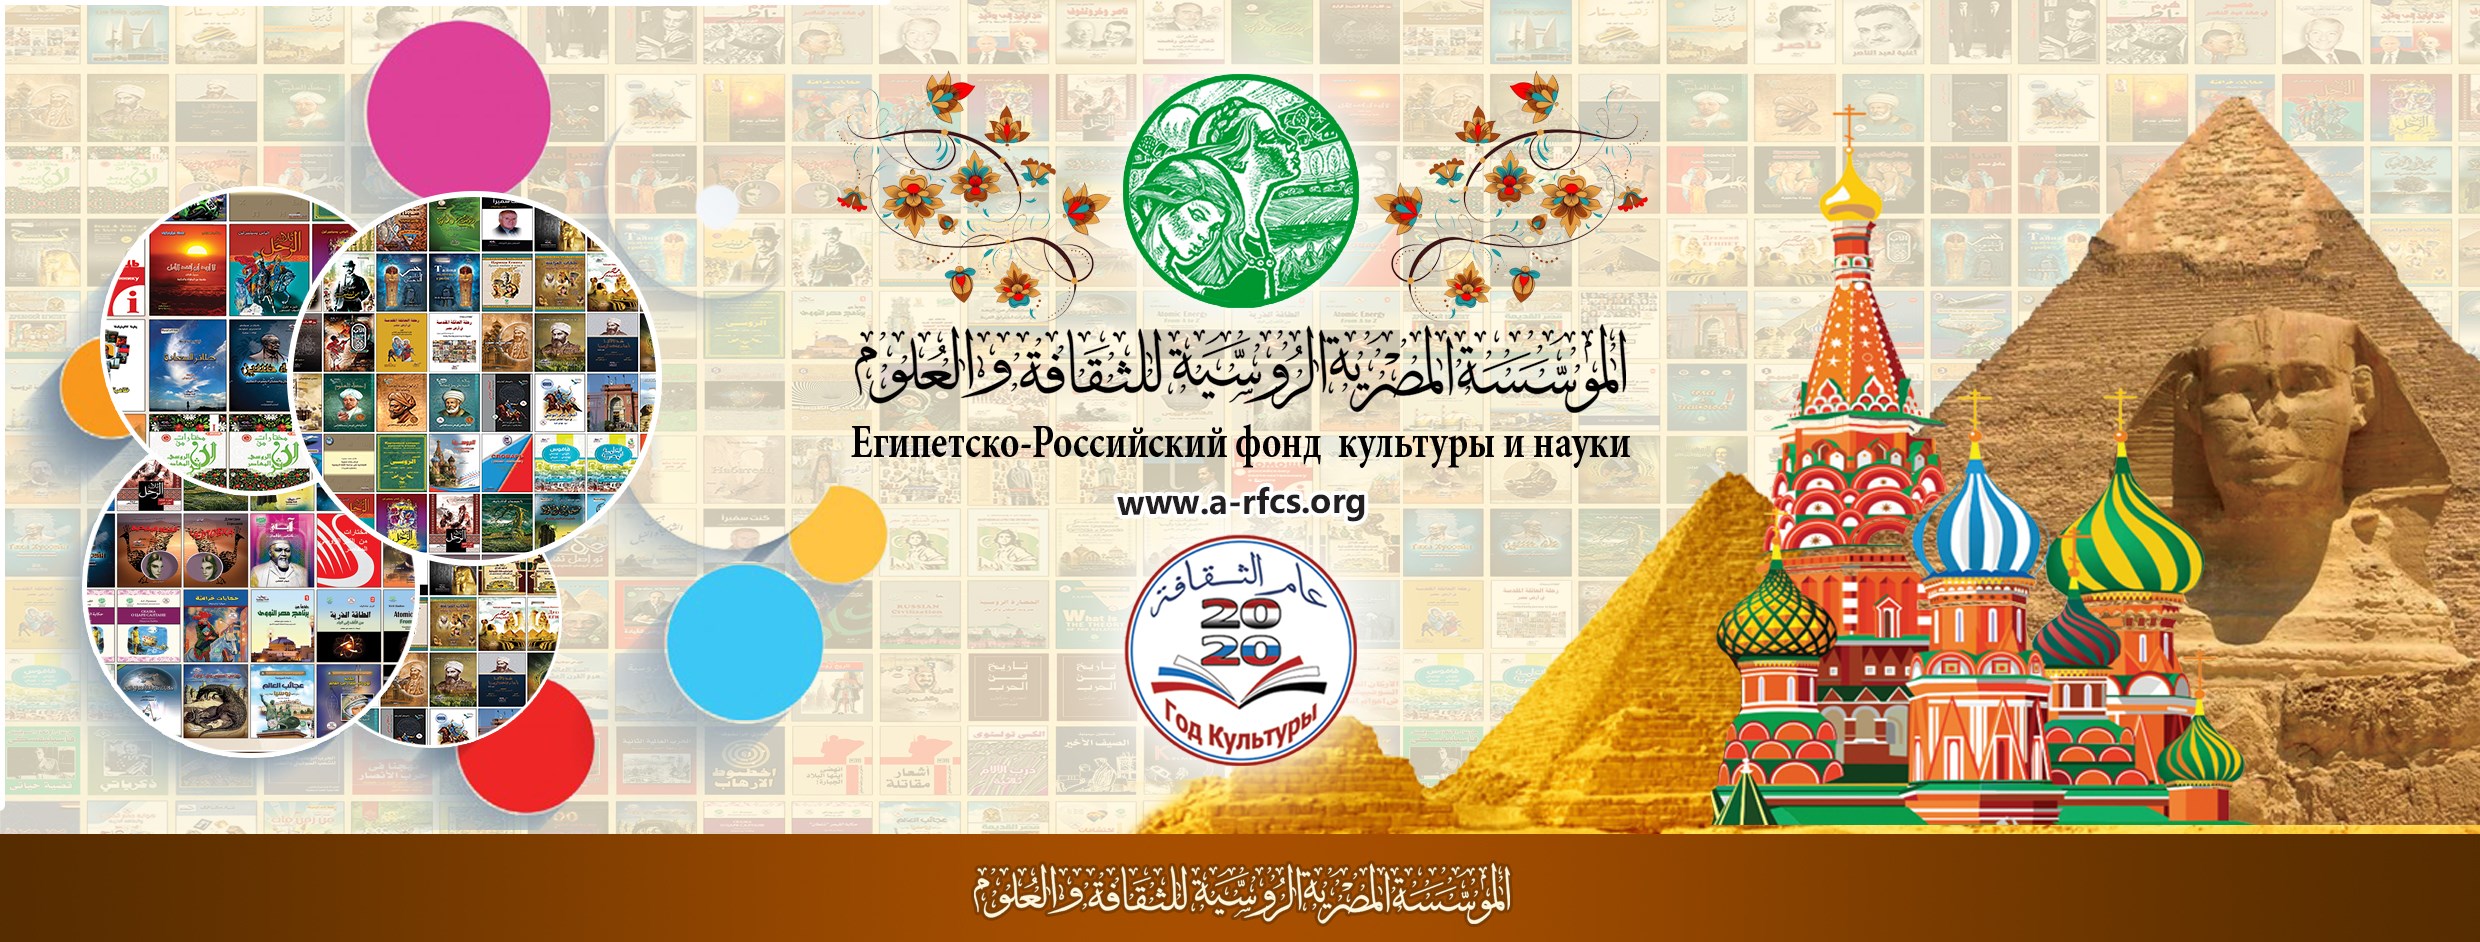 دعوة للانضمام إلى عضوية المؤسسة المصرية الروسية للثقافة والعلوم